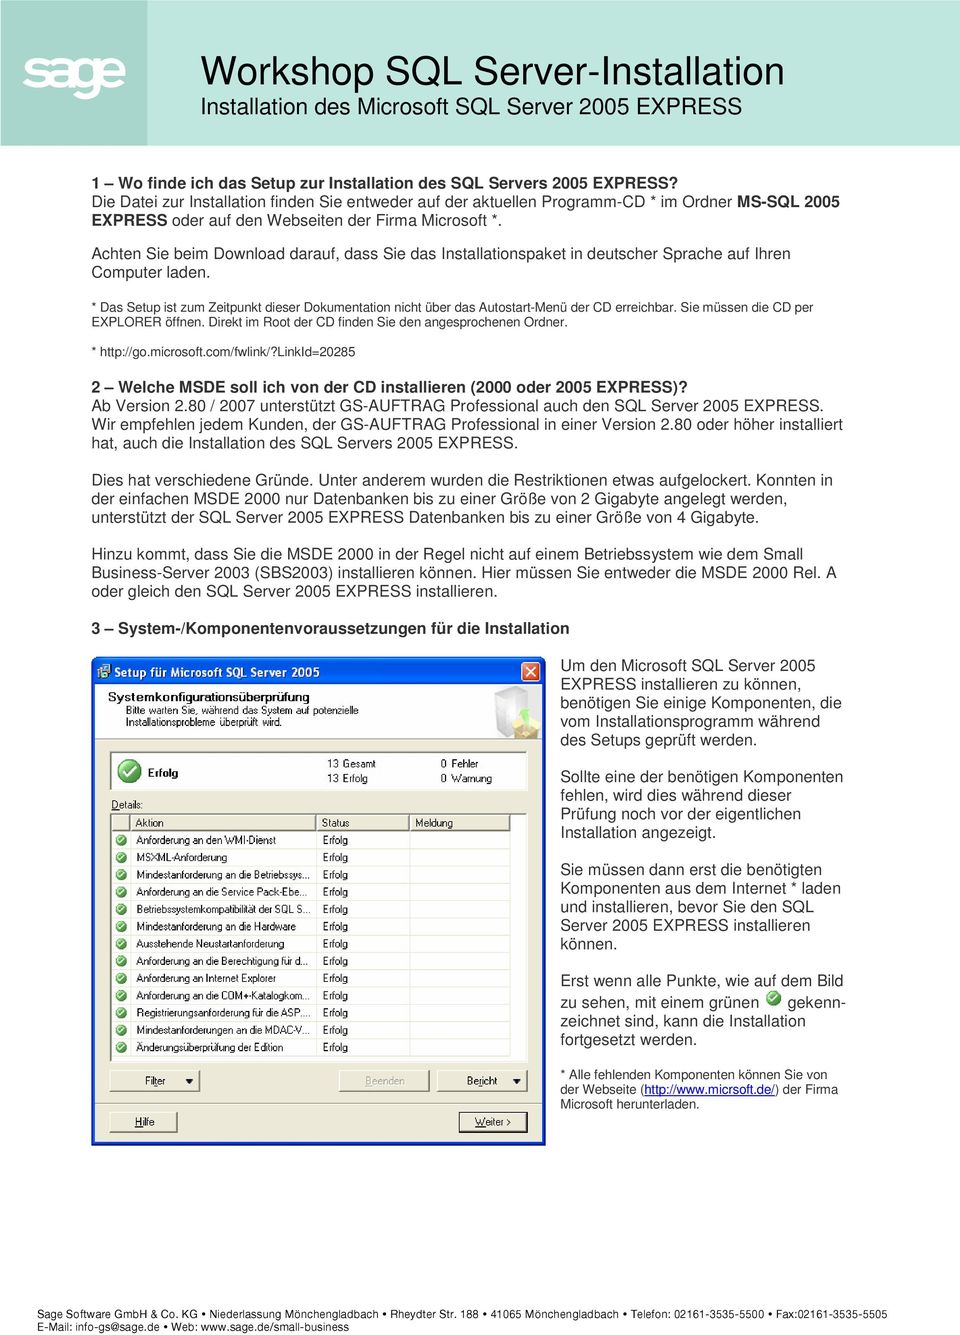 Achten Sie beim Download darauf, dass Sie das Installationspaket in deutscher Sprache auf Ihren Computer laden.